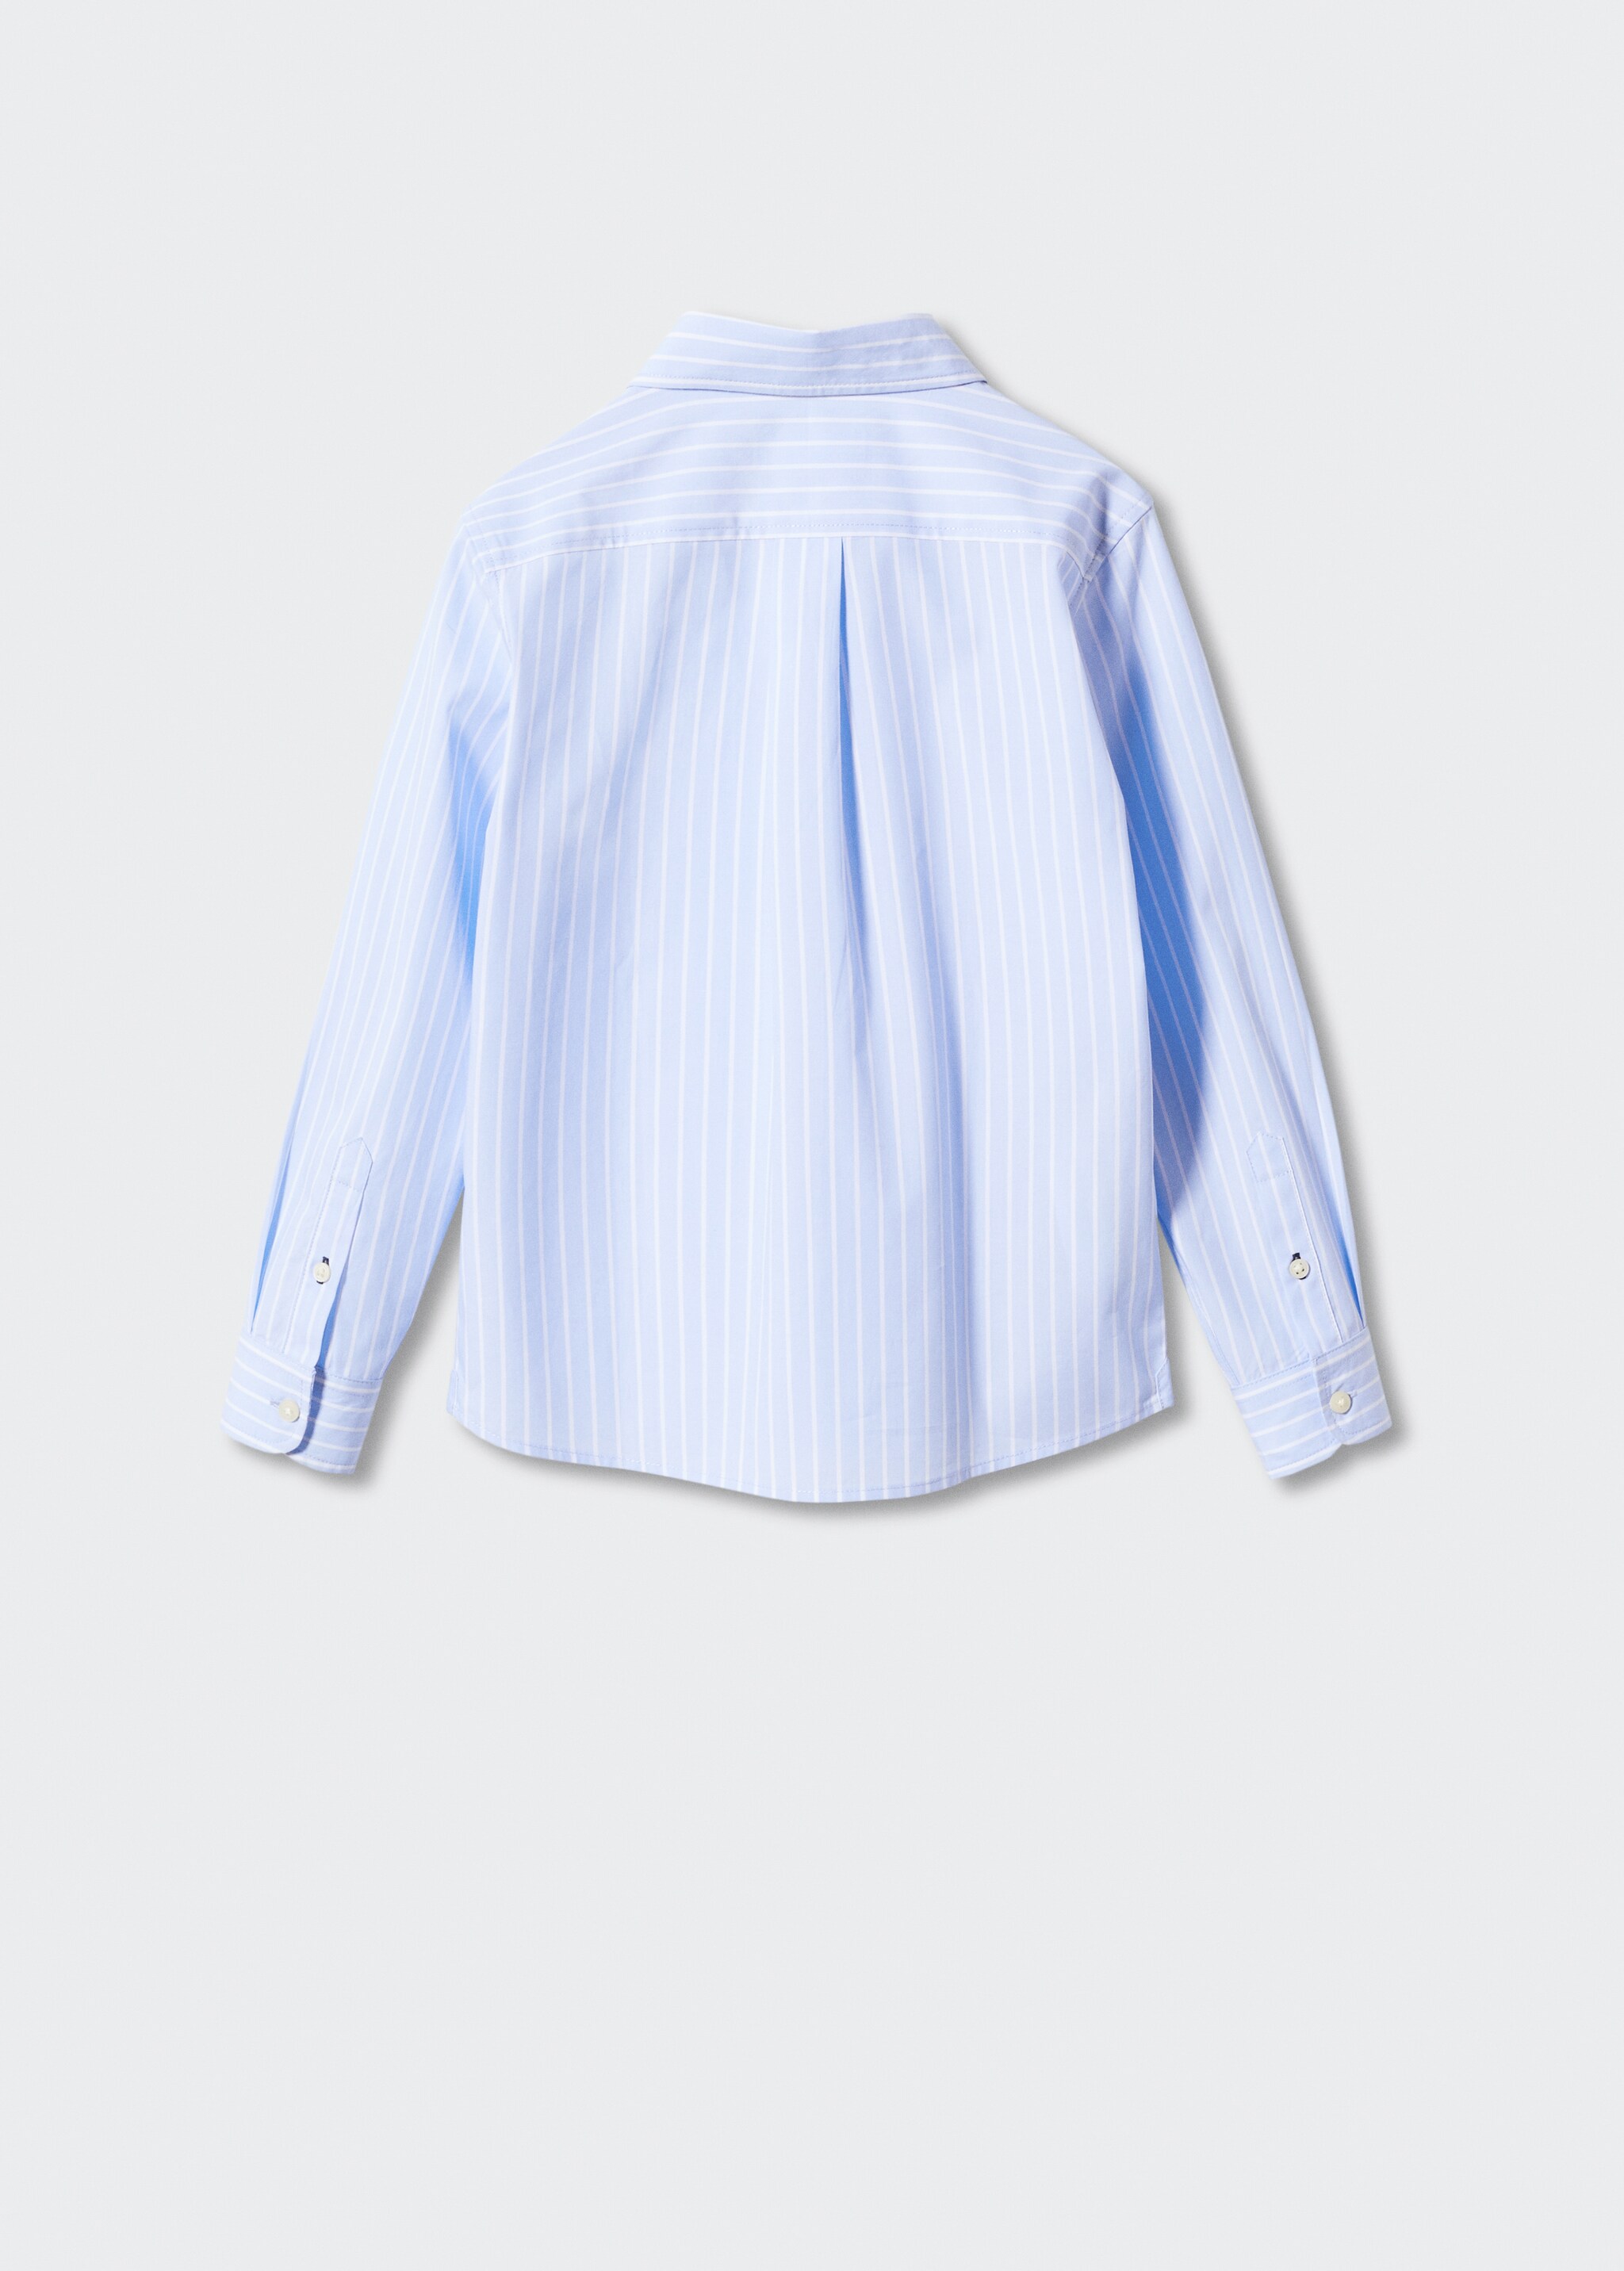 Chemise habillée coton rayures - Verso de l’article